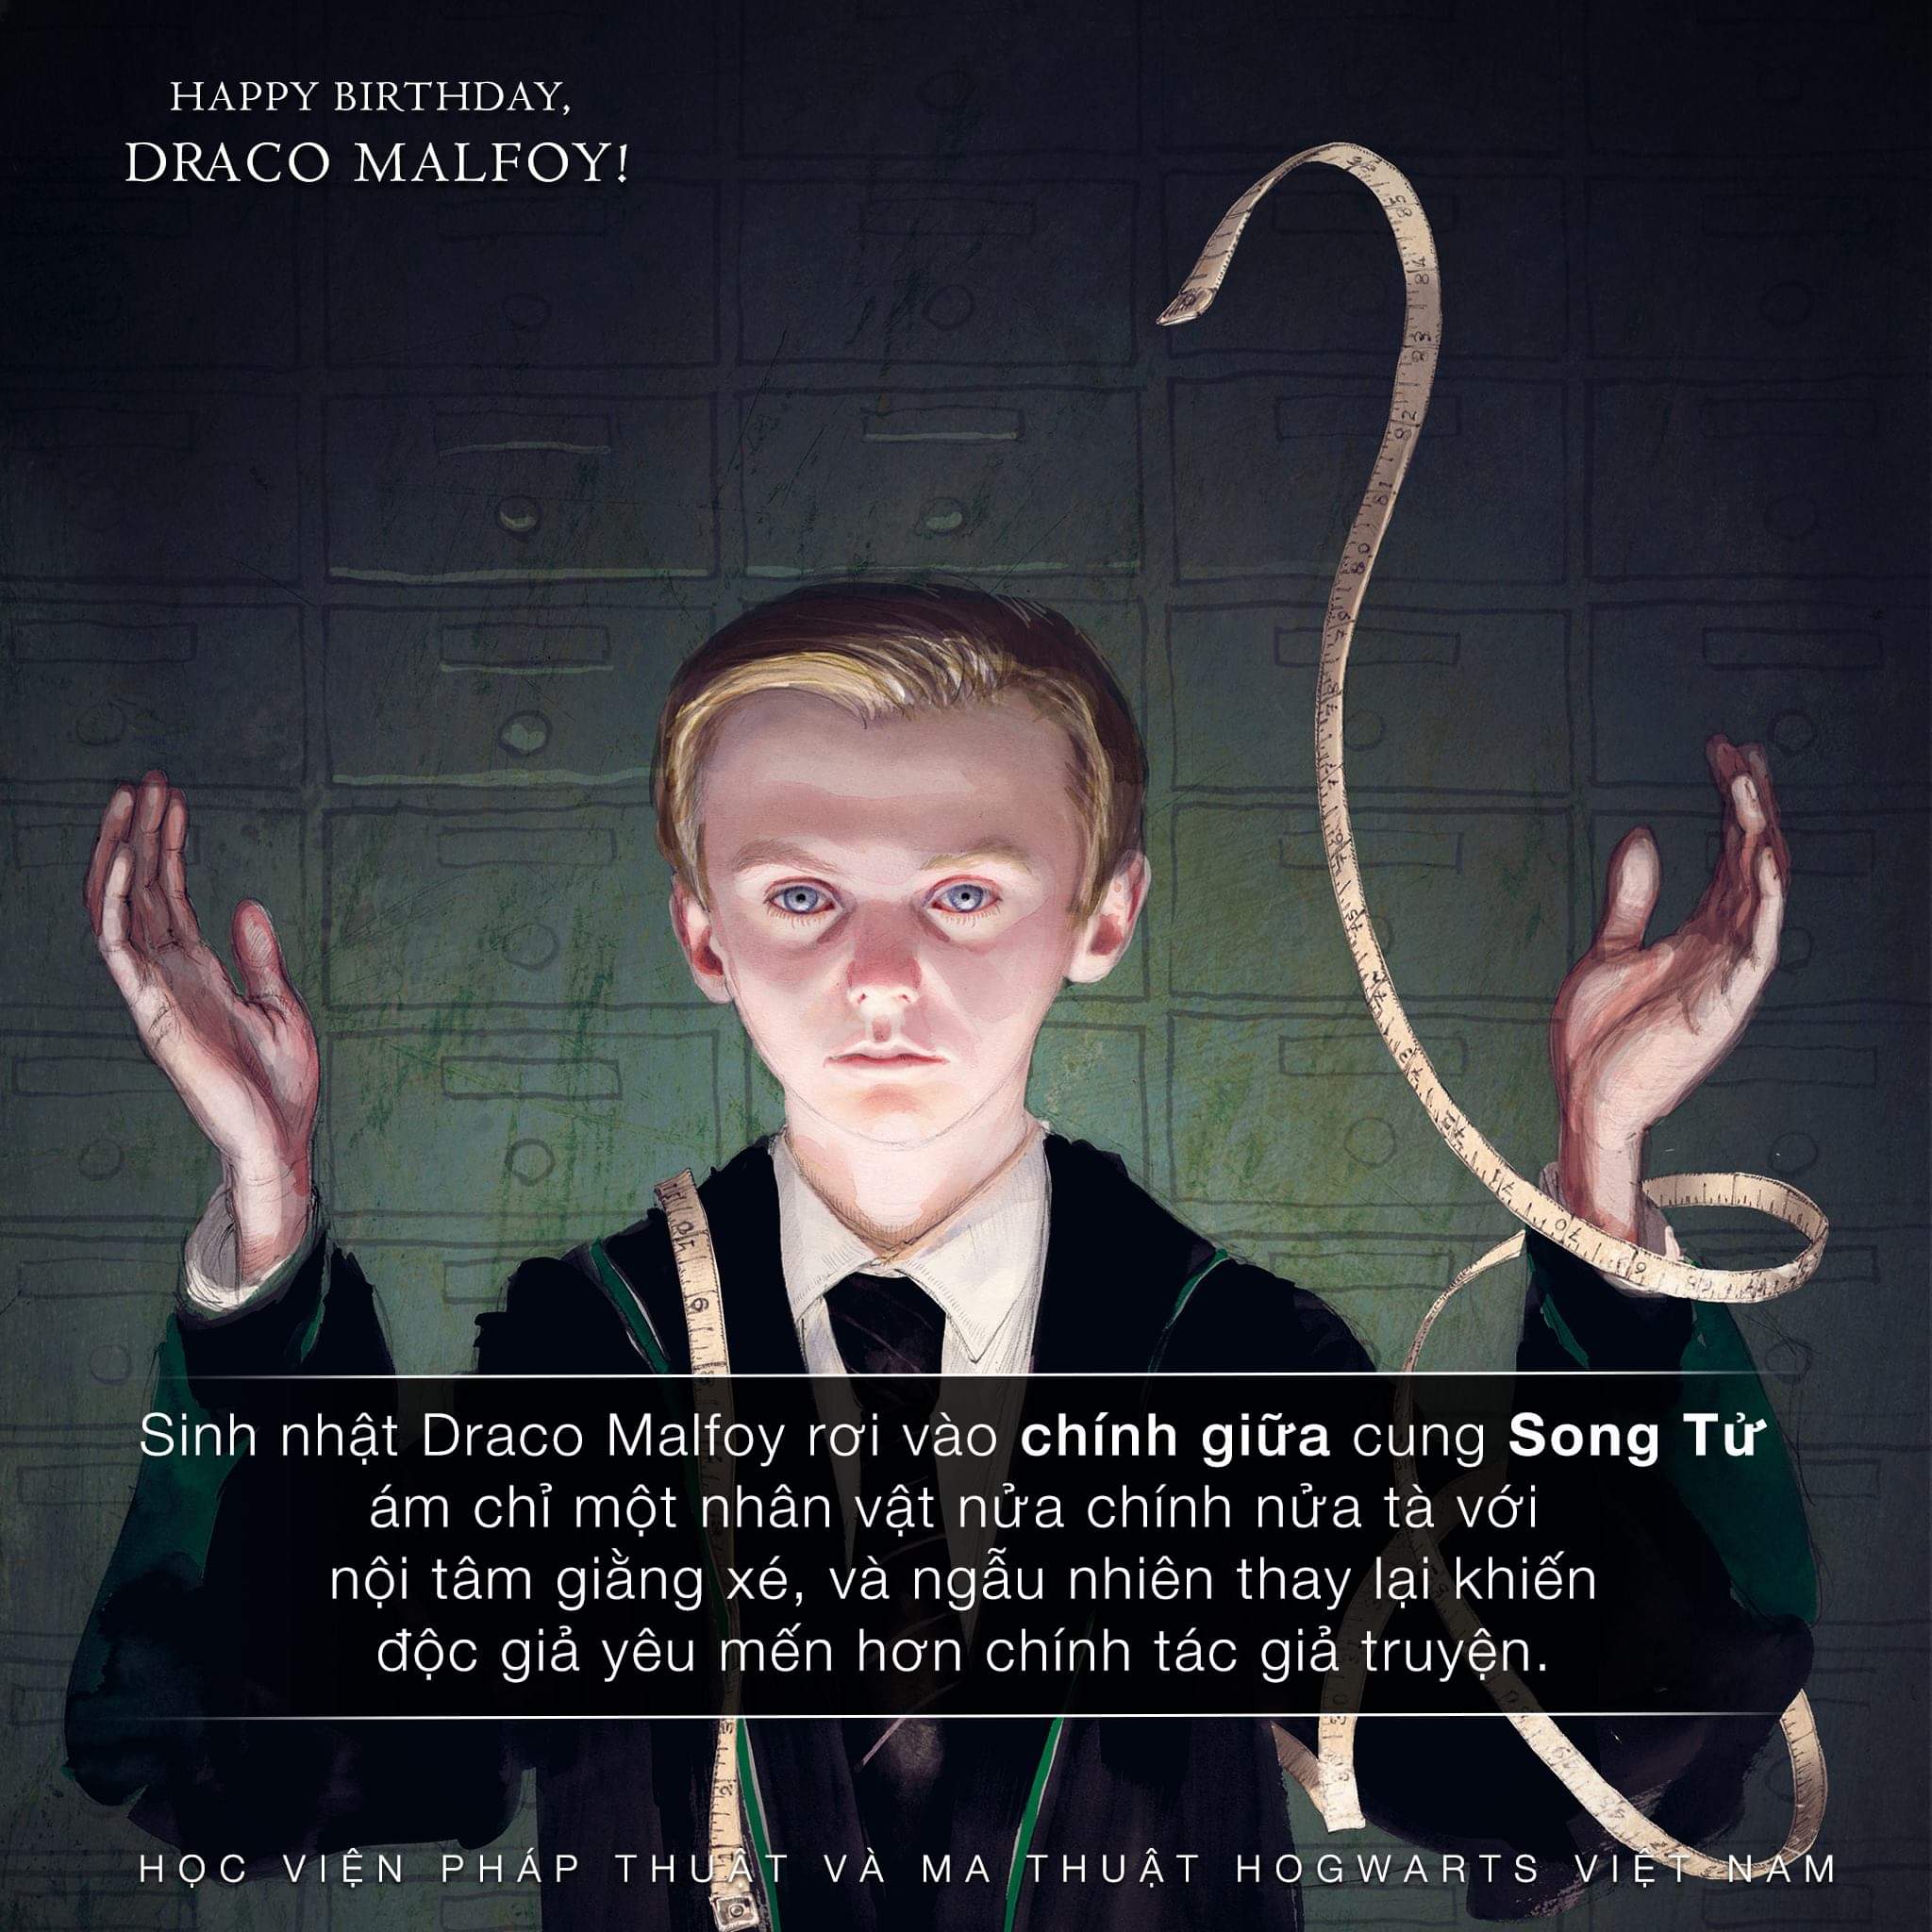 Chính giữa cung Song Tử là Draco Malfoy